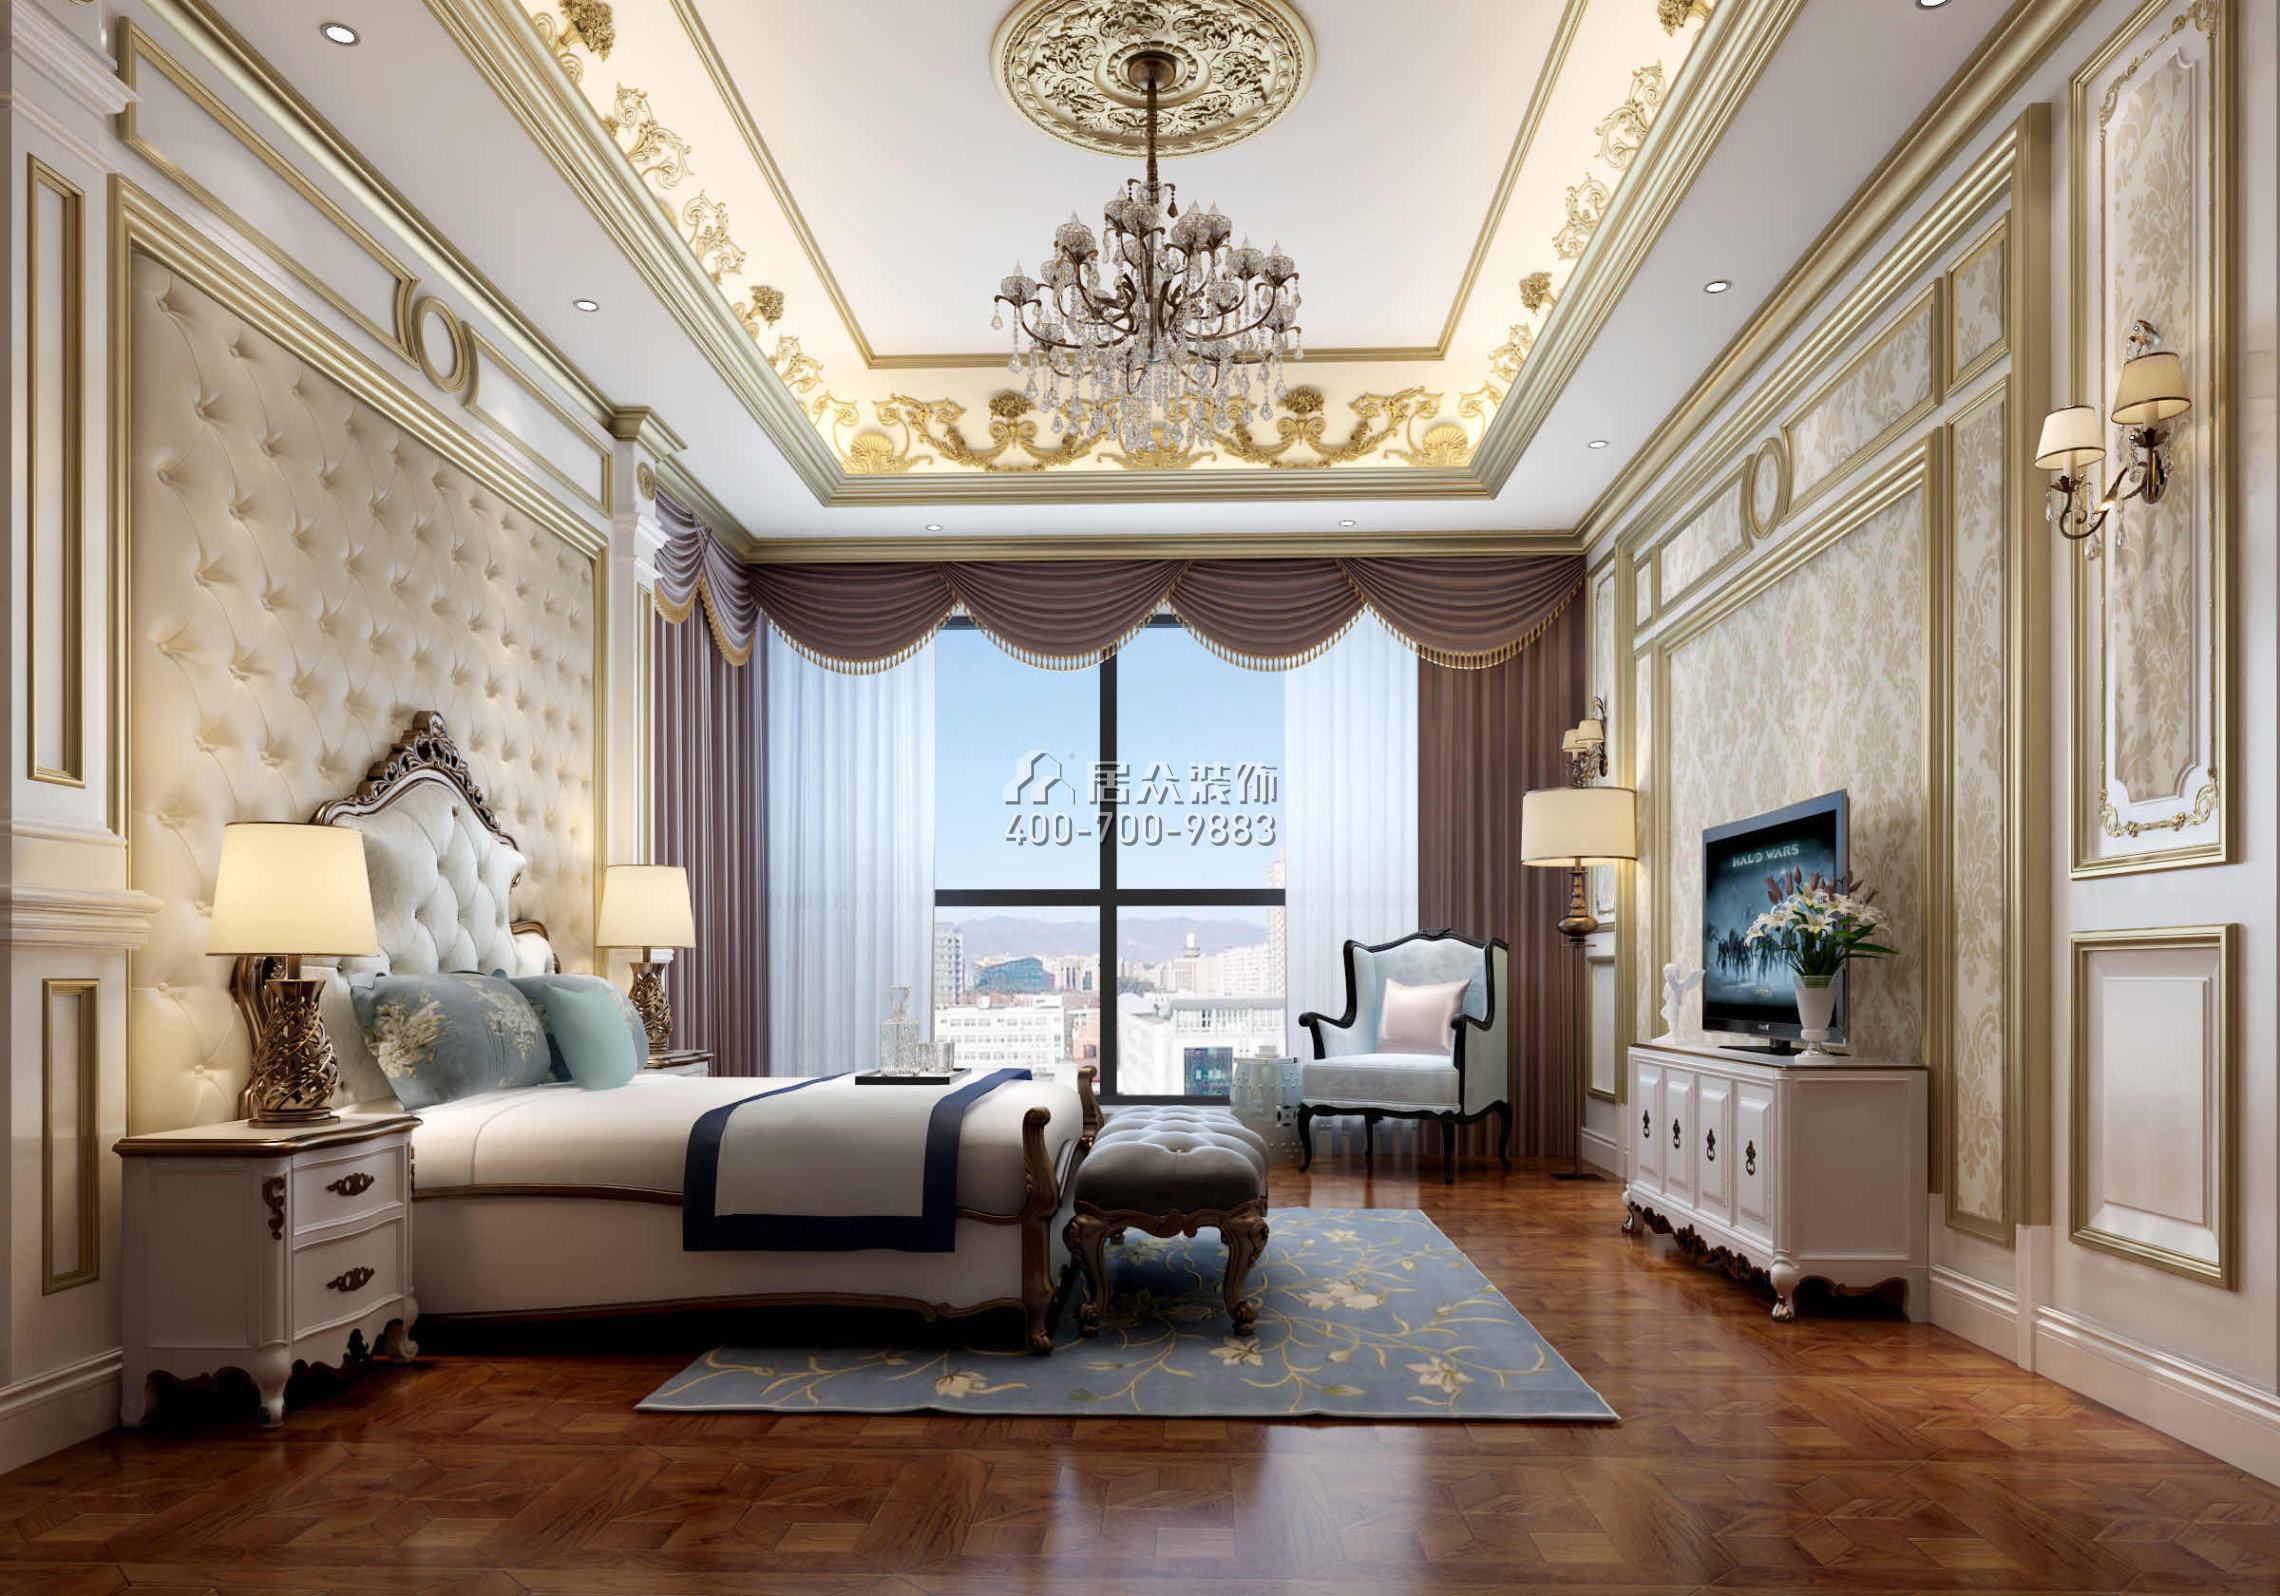 龍泉豪苑560平方米混搭風格平層戶型臥室裝修效果圖